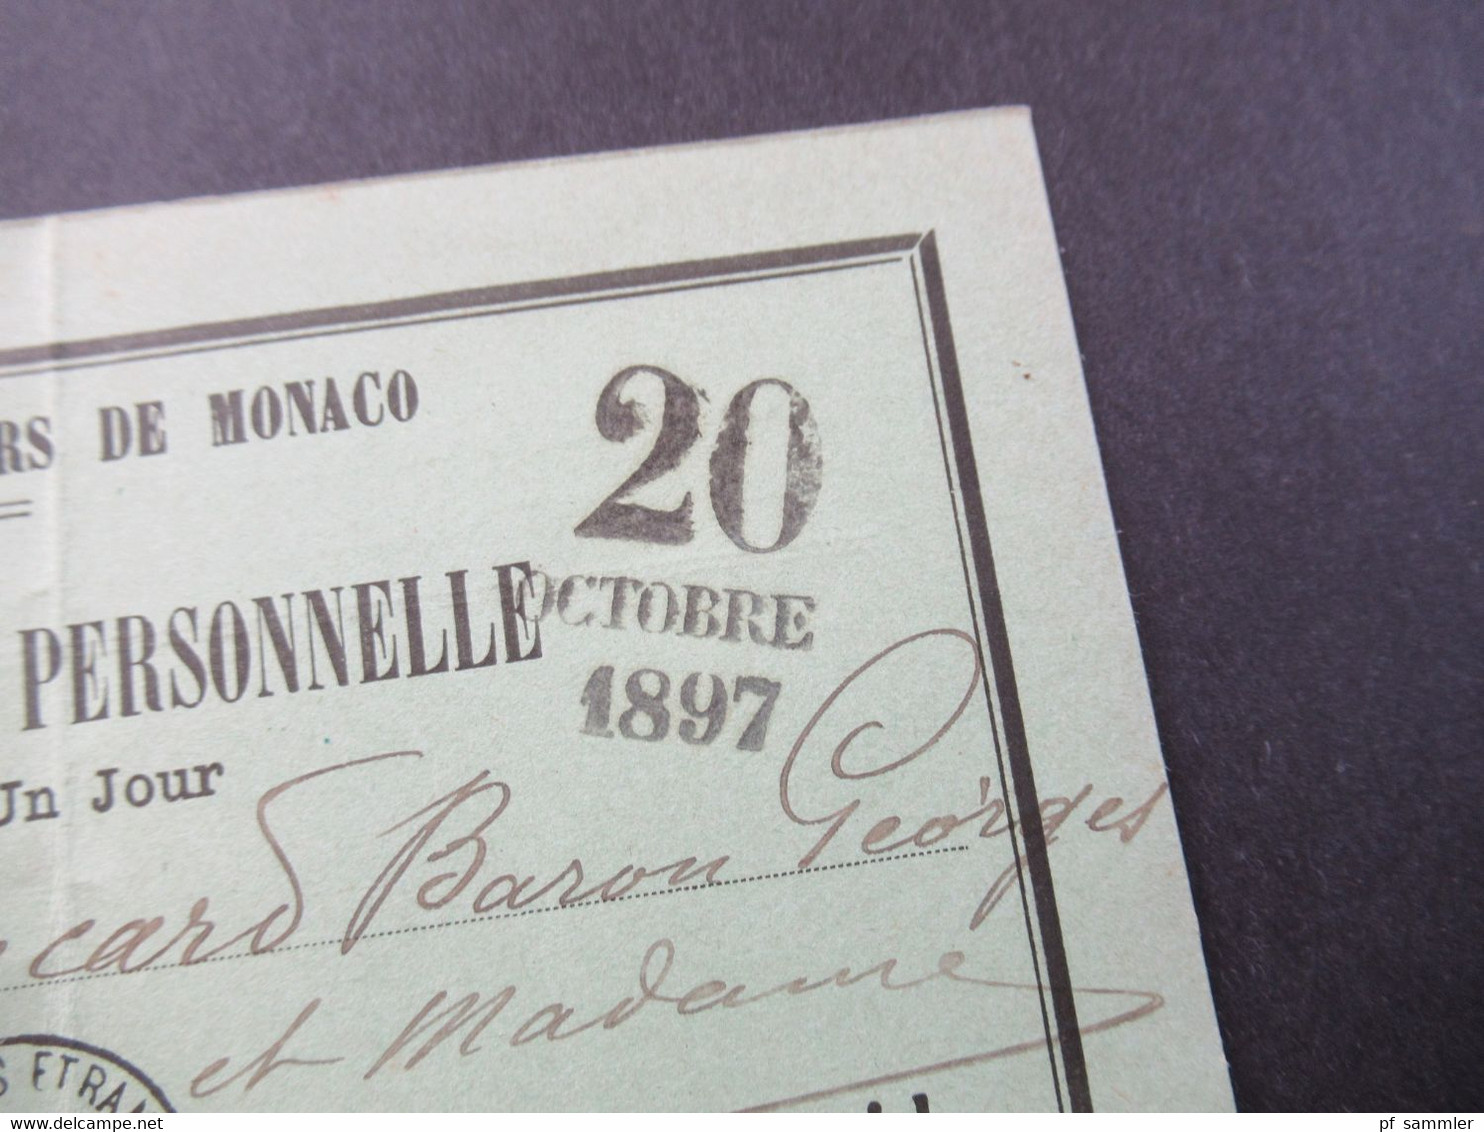 Monaco 20.10.1897 Carte D'Admission Personelle Cercle Des Etrangers De Monaco Valabe Pour Un Jour - Covers & Documents